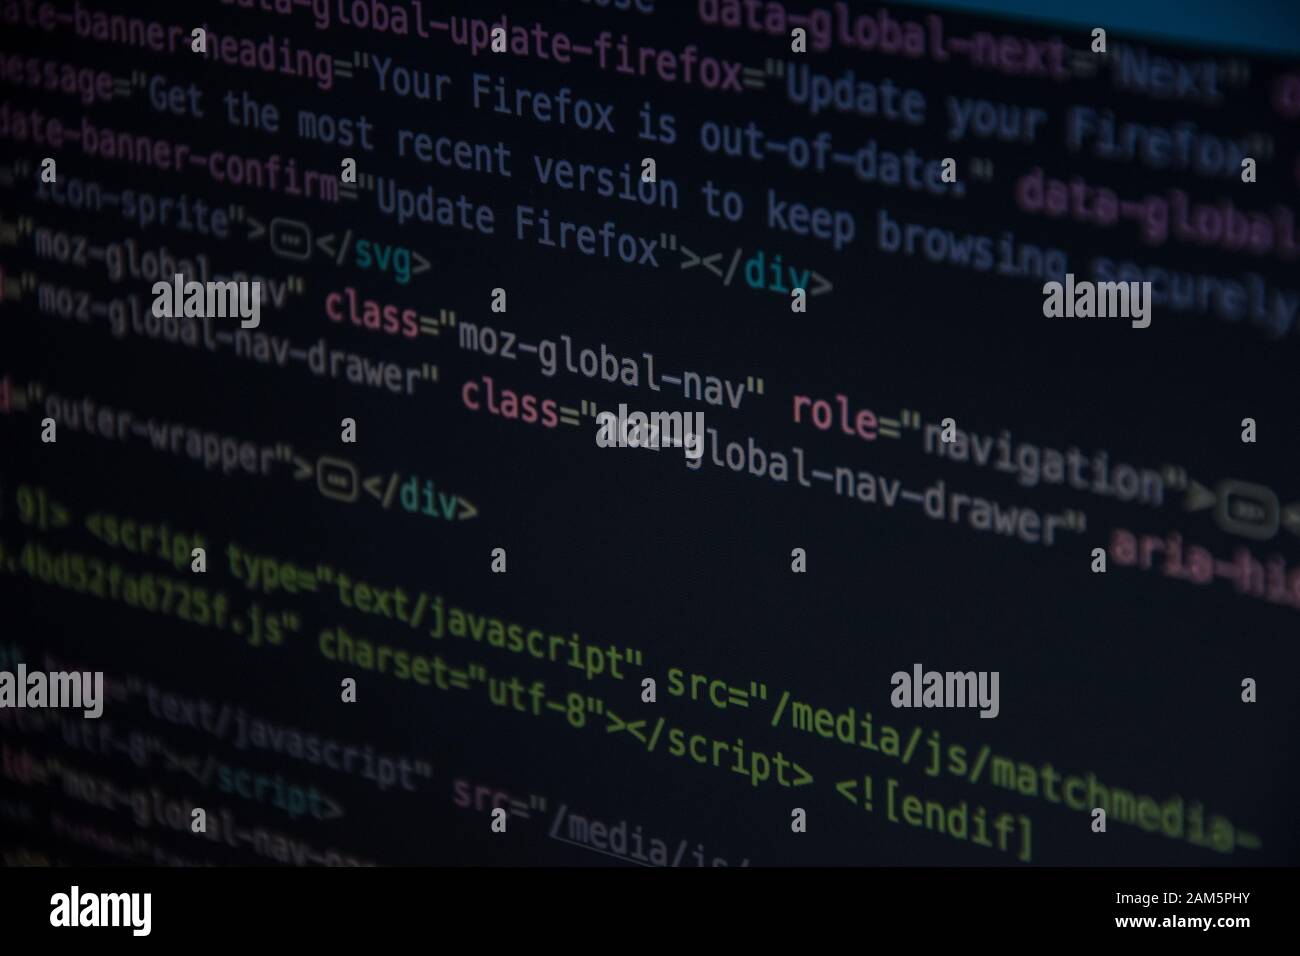 Mã code CSS HTML là một trong những công cụ cần thiết để tạo ra những trang web thiết kế đẹp và chuyên nghiệp. Hãy khám phá những tác phẩm nghệ thuật được tạo ra từ mã code này trong hình ảnh liên quan, và cảm nhận sự đa dạng và phong phú của thế giới code trong thiết kế web.